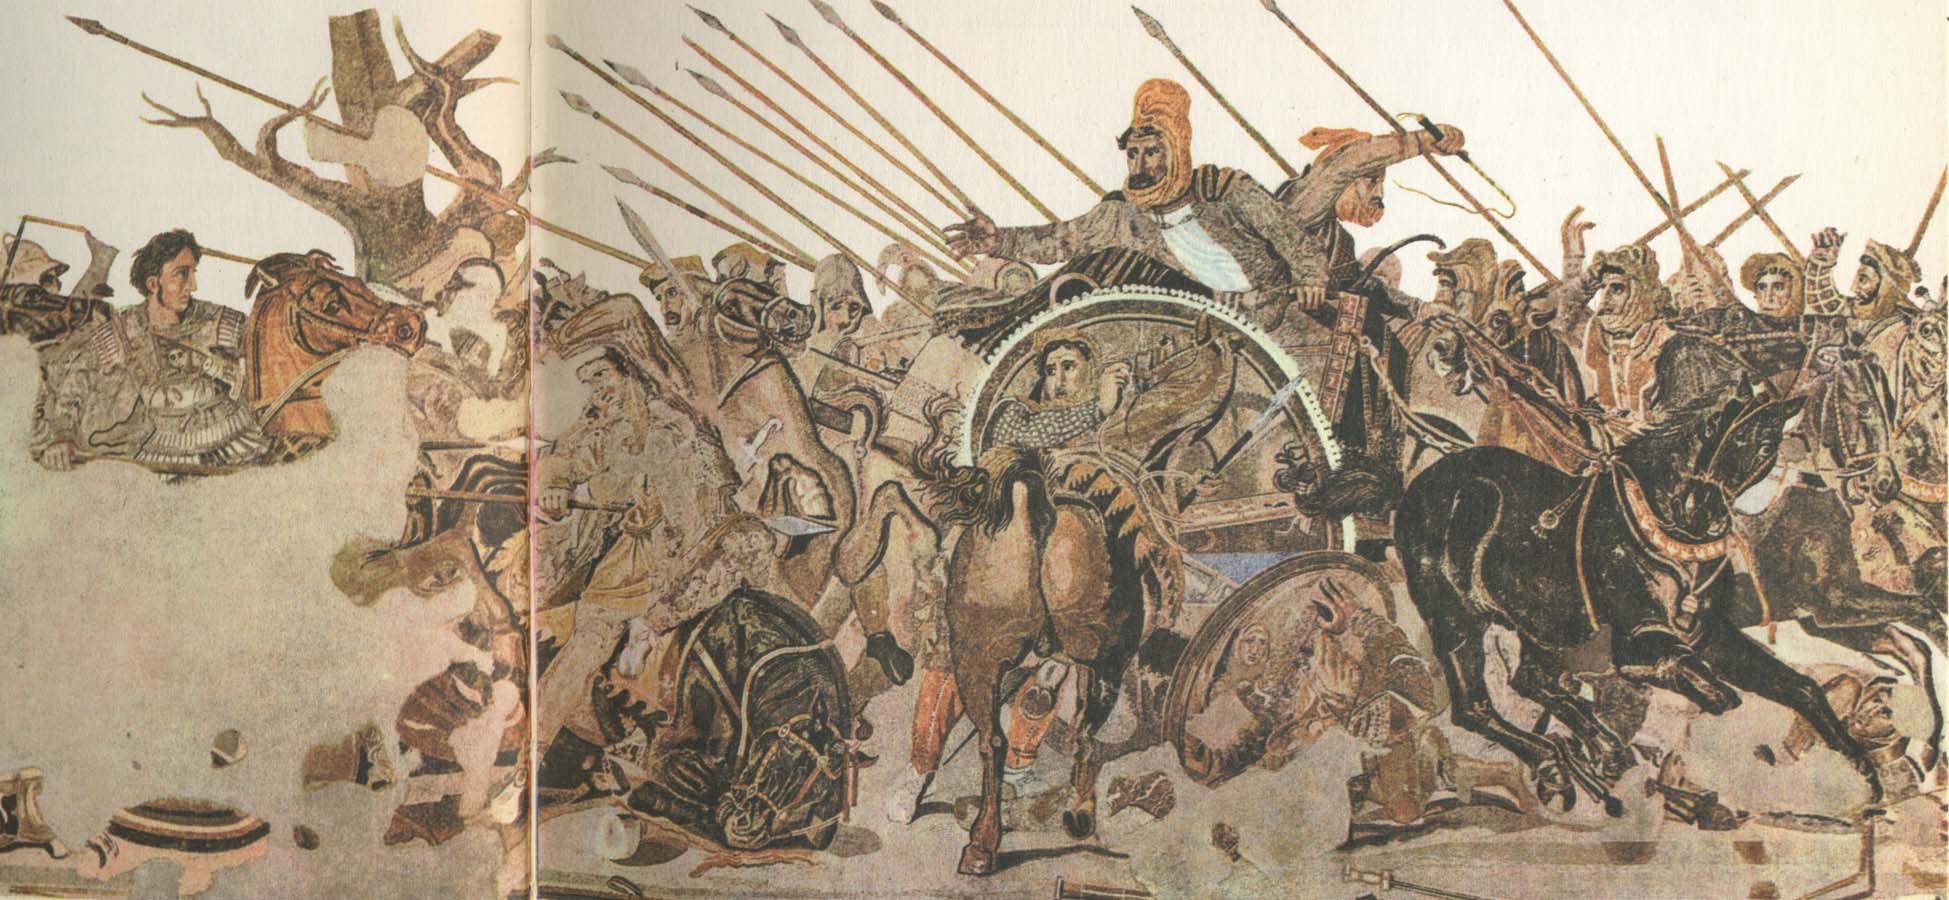 alexanders astundan att erovra och utforska nytt land ledde till hans faltts fatag mot perserkungen derius III s stora armeer